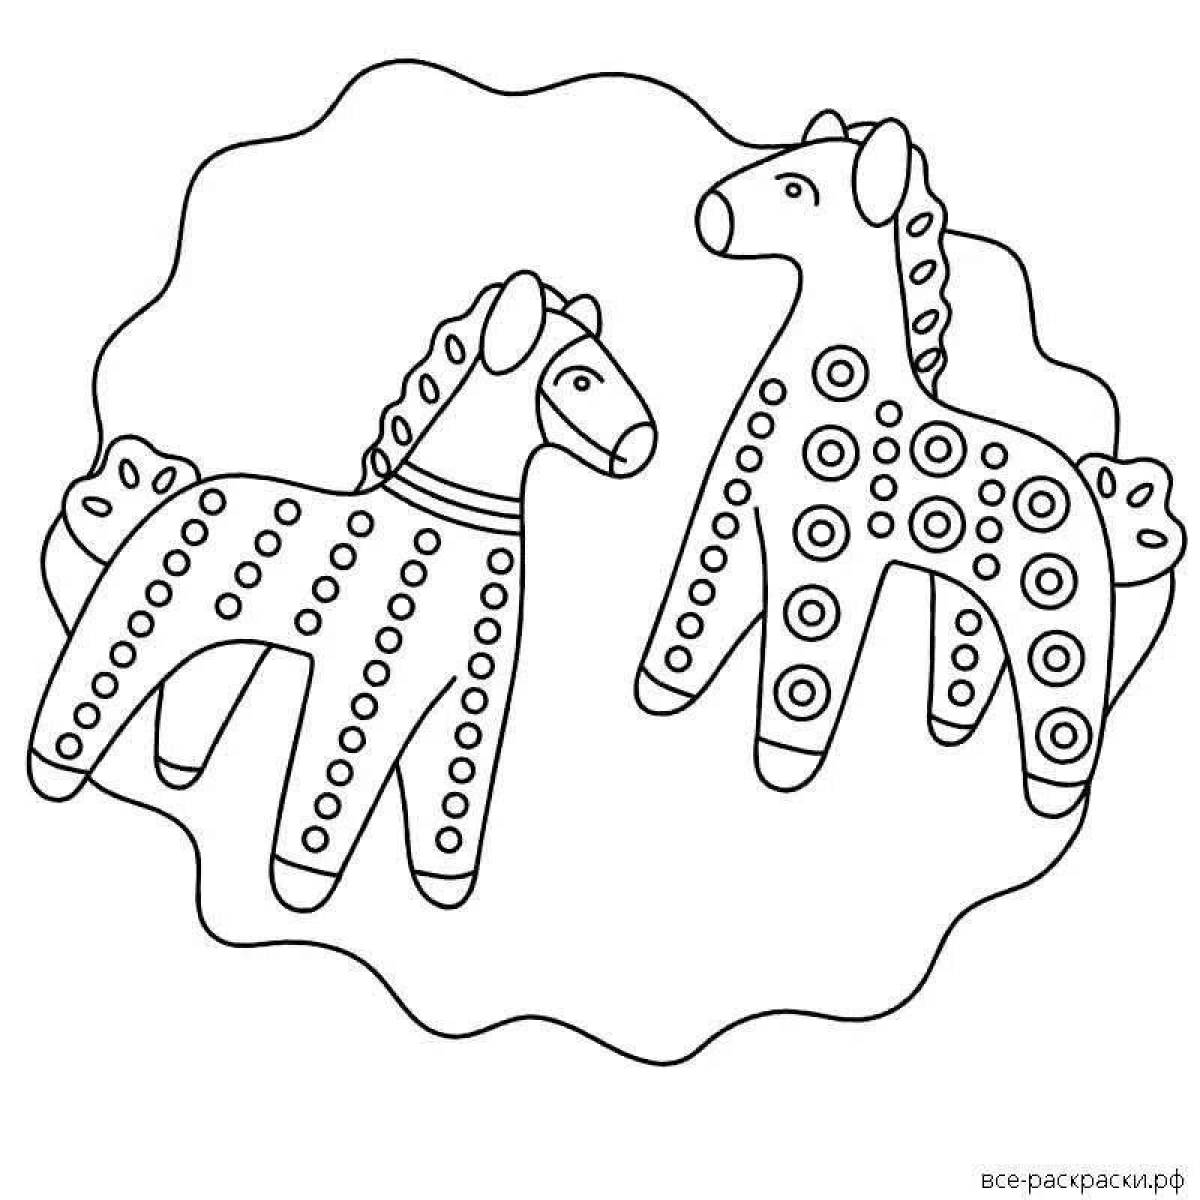 Развлекательная раскраска дымковской лошади для детей